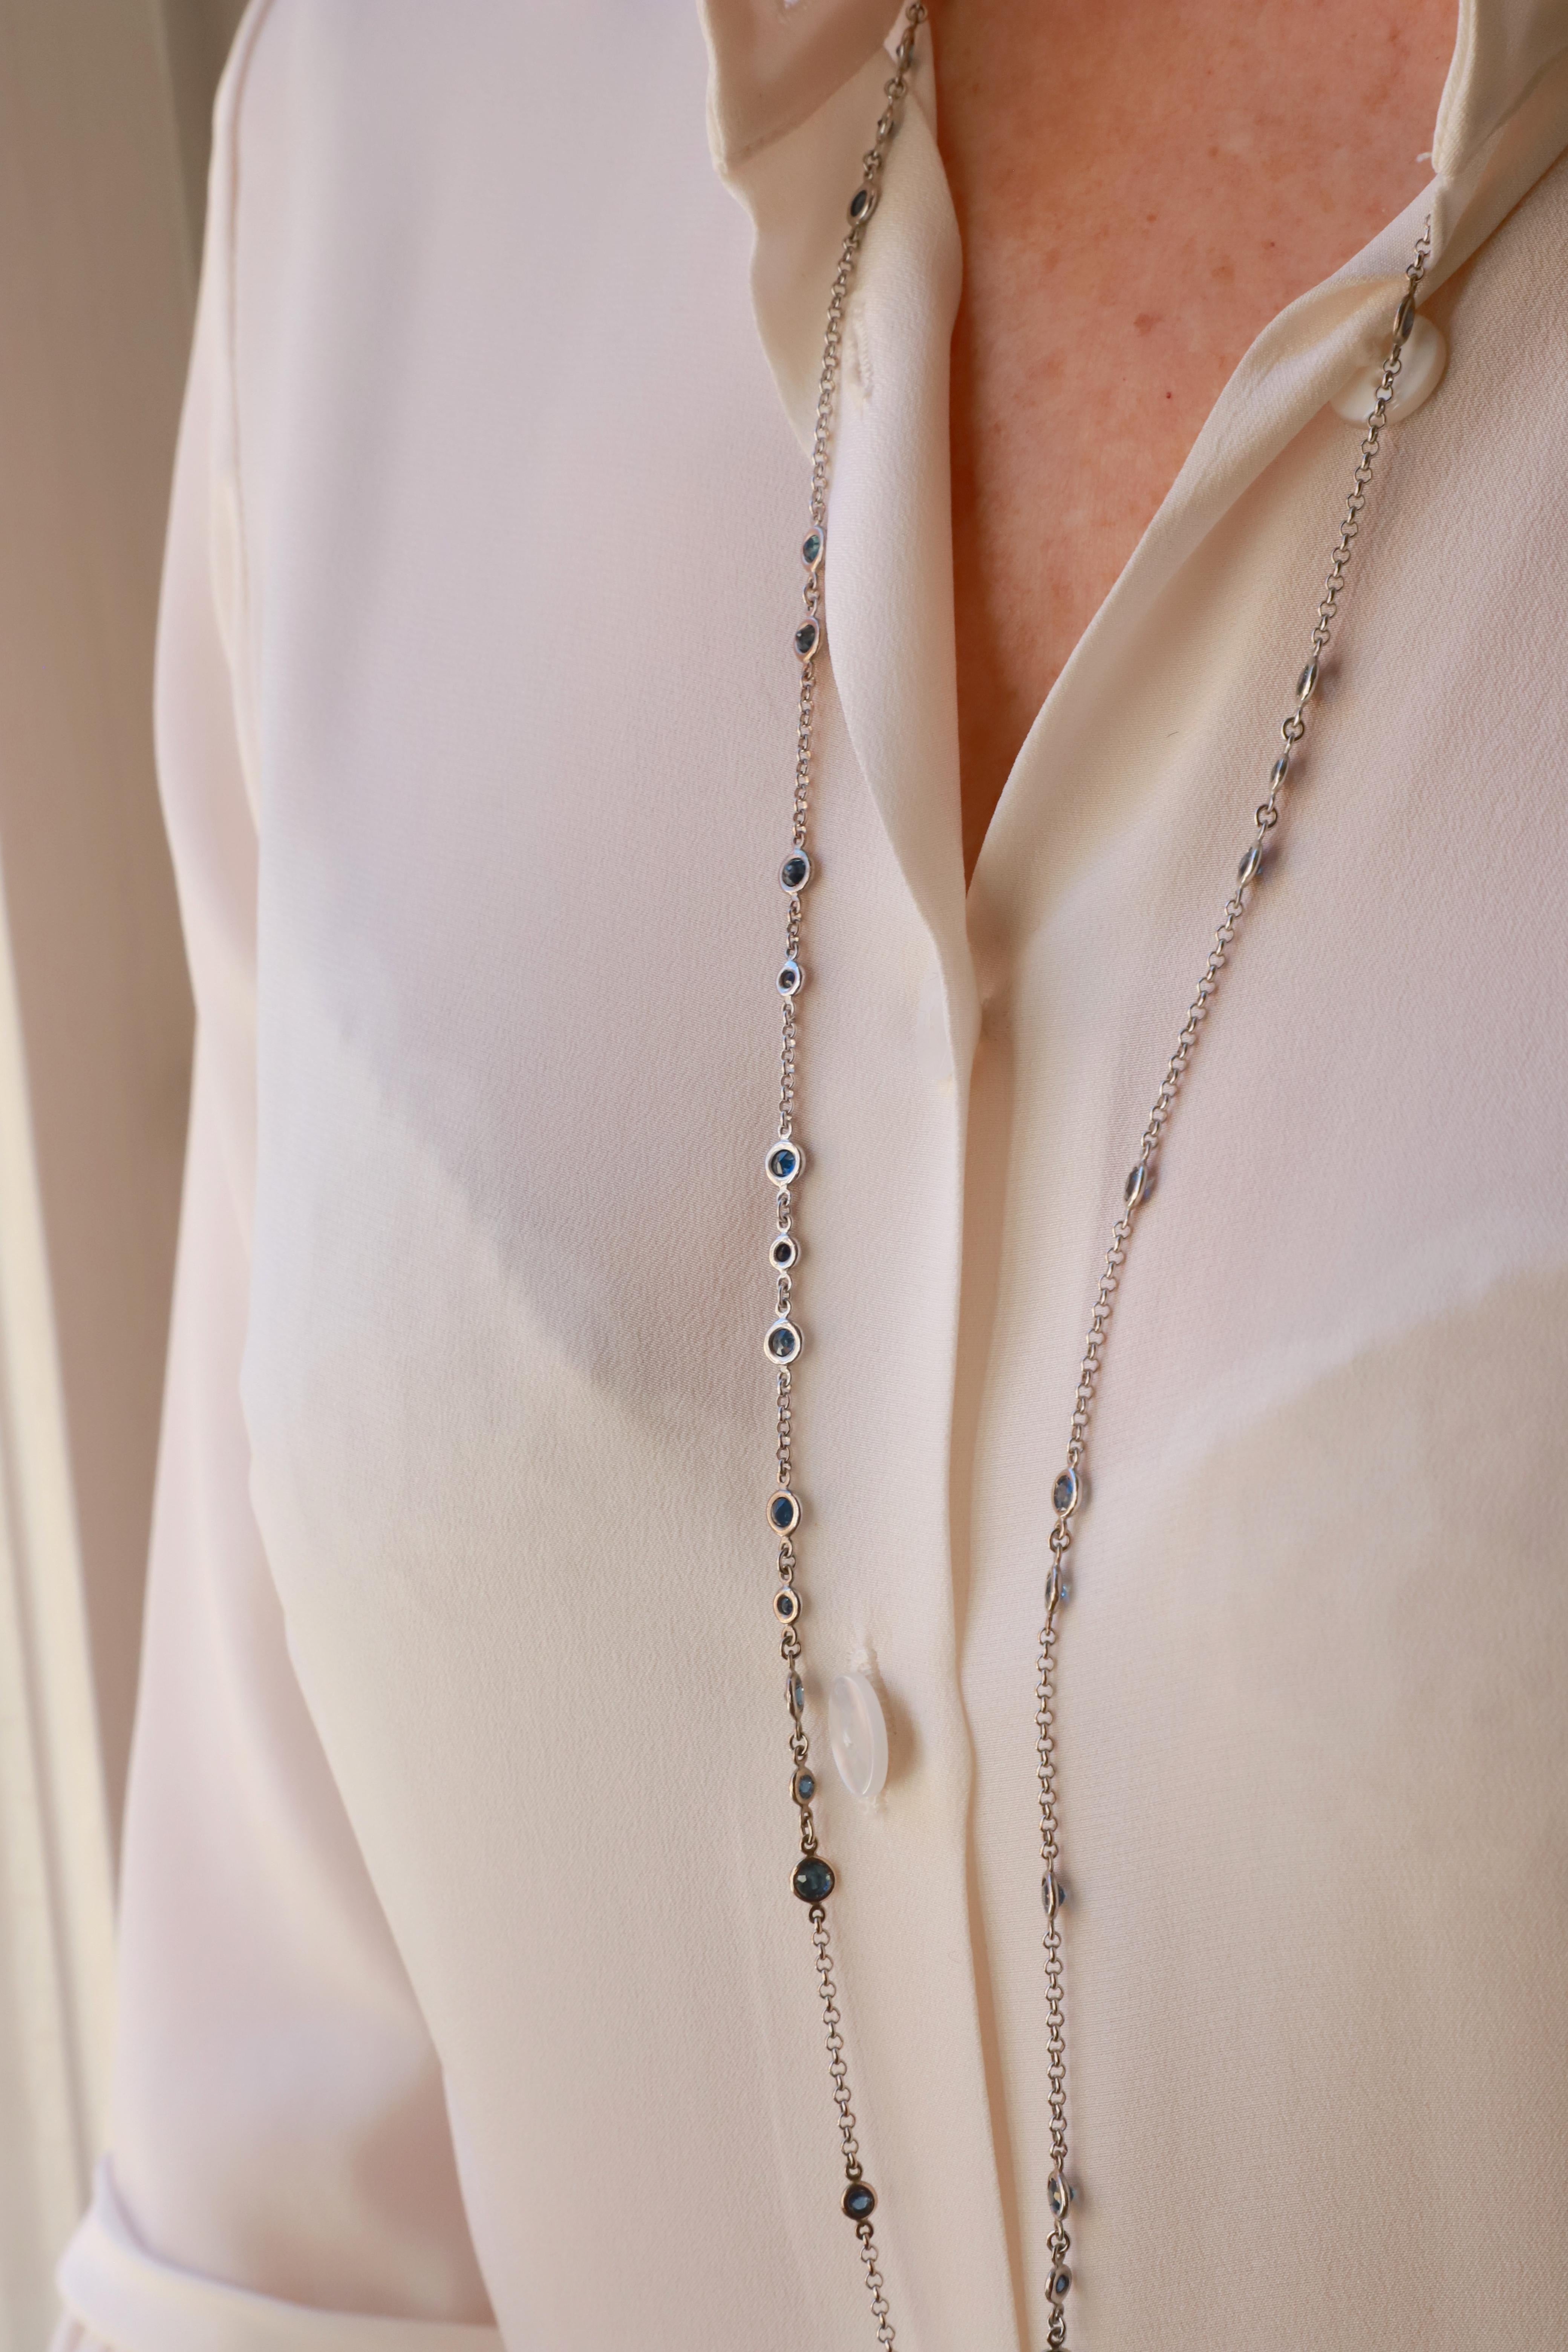 10.40 Karats Sapphires 18 Karats White Gold Blue Sautoir Long Chain Necklace For Sale 2